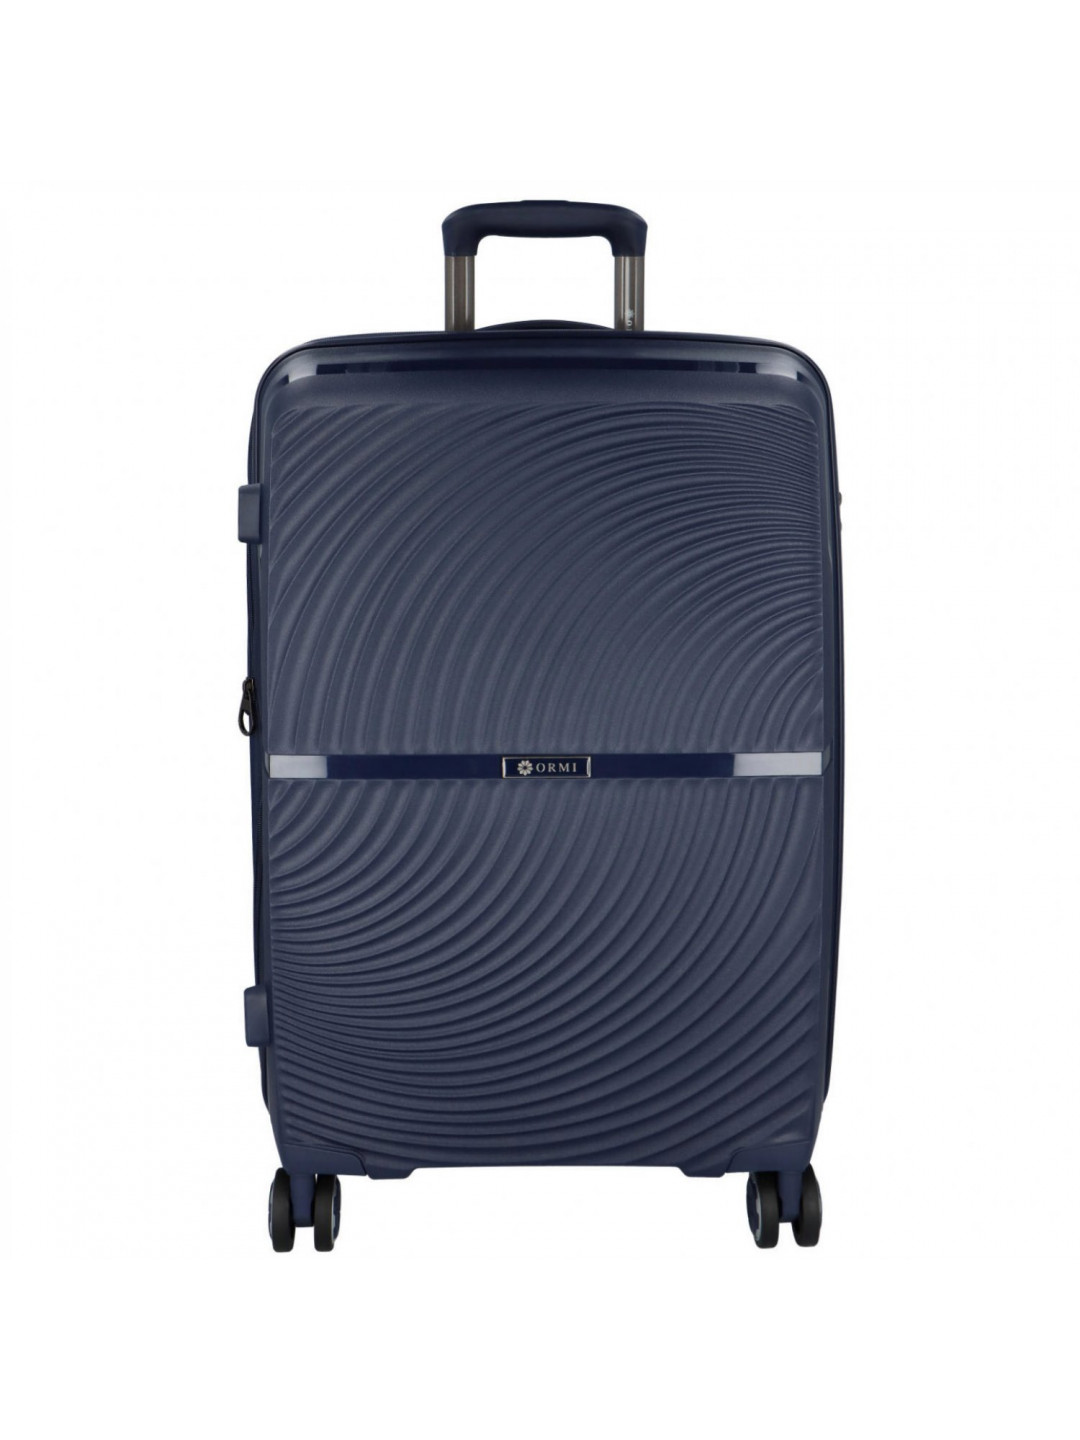 Cestovní plastový kufr tmavě modrý – Ormi Tryfon L